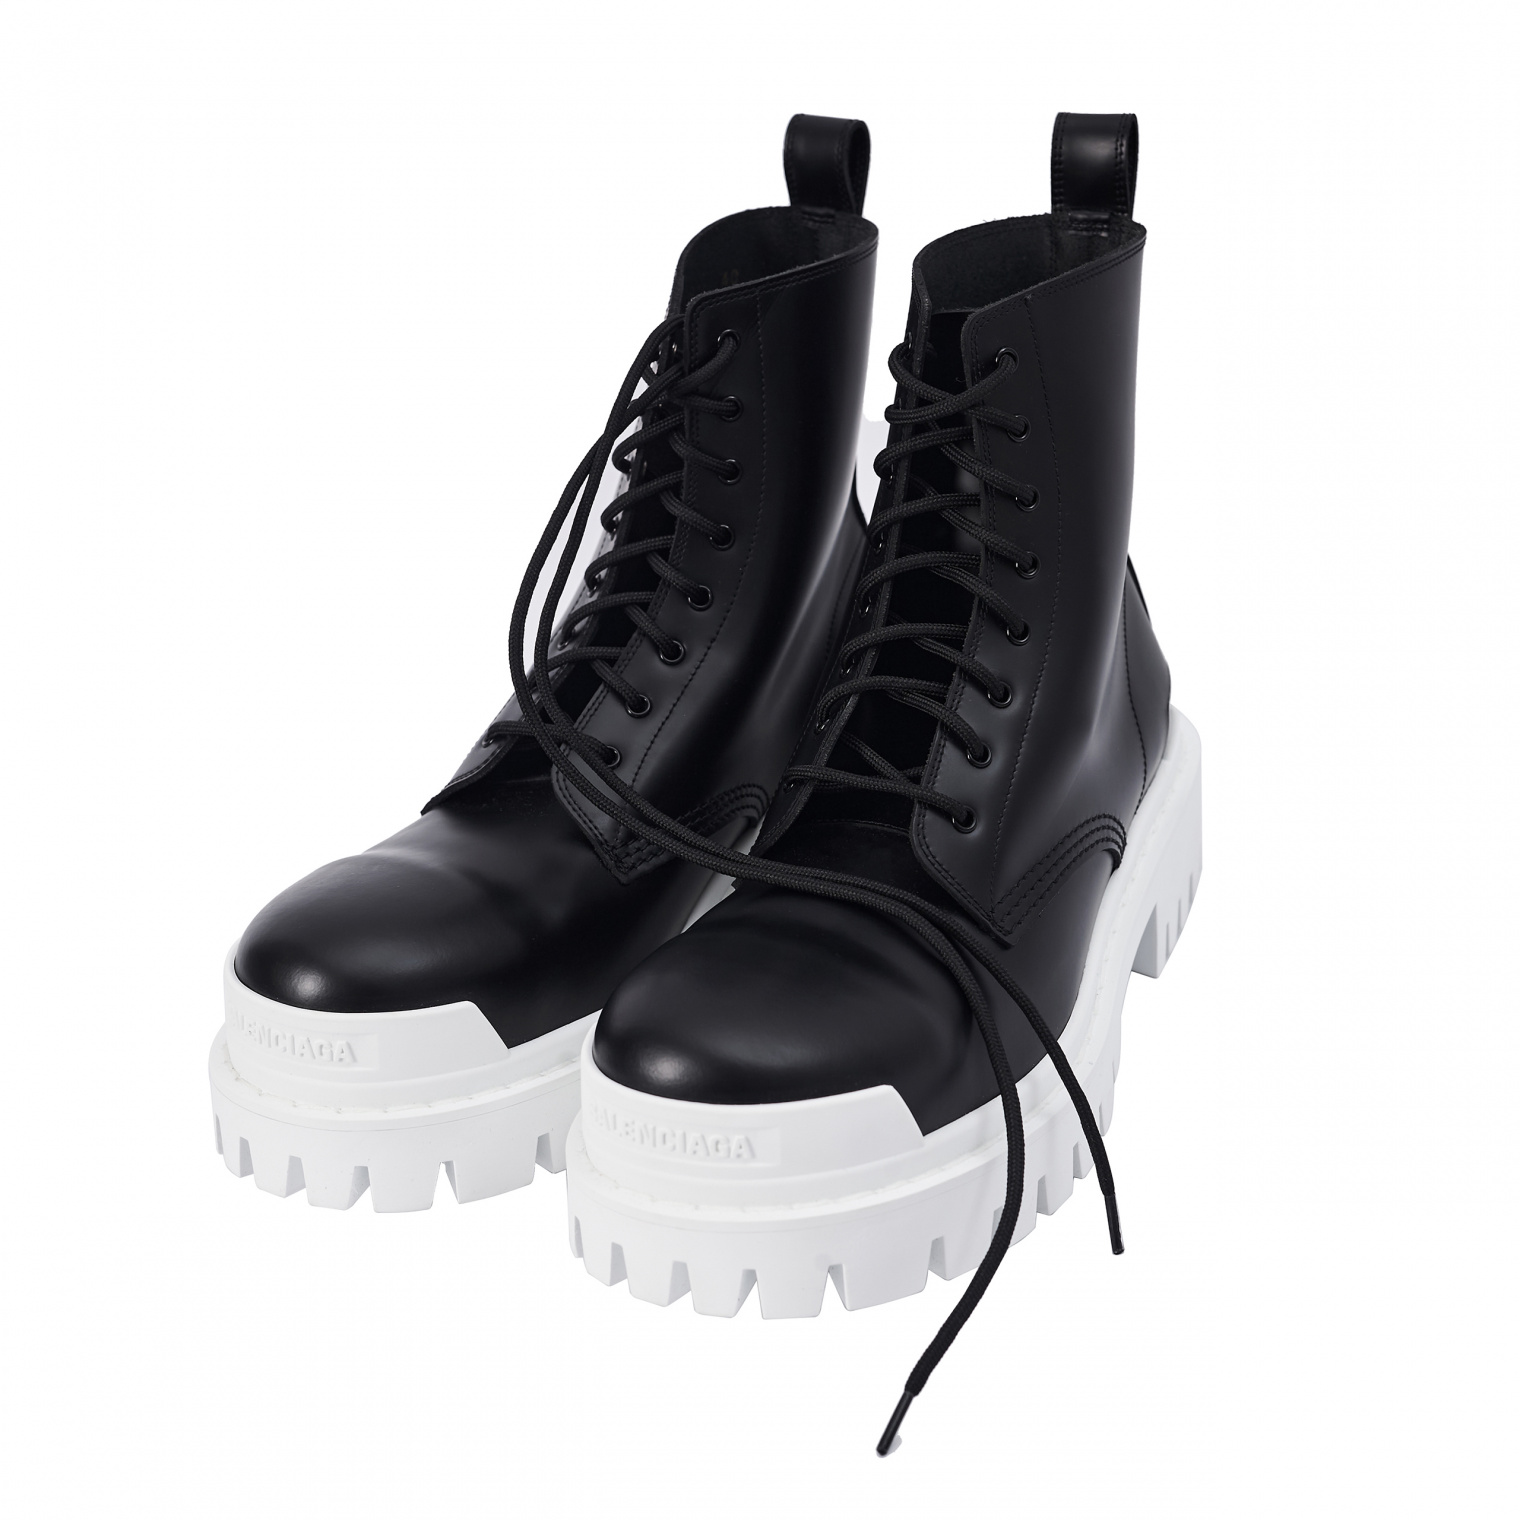 Женские черные ботинки strike с белой подошвой Balenciaga — купить за 87750 руб. в интернет-магазине SV77, арт. 590974/WA967/1090